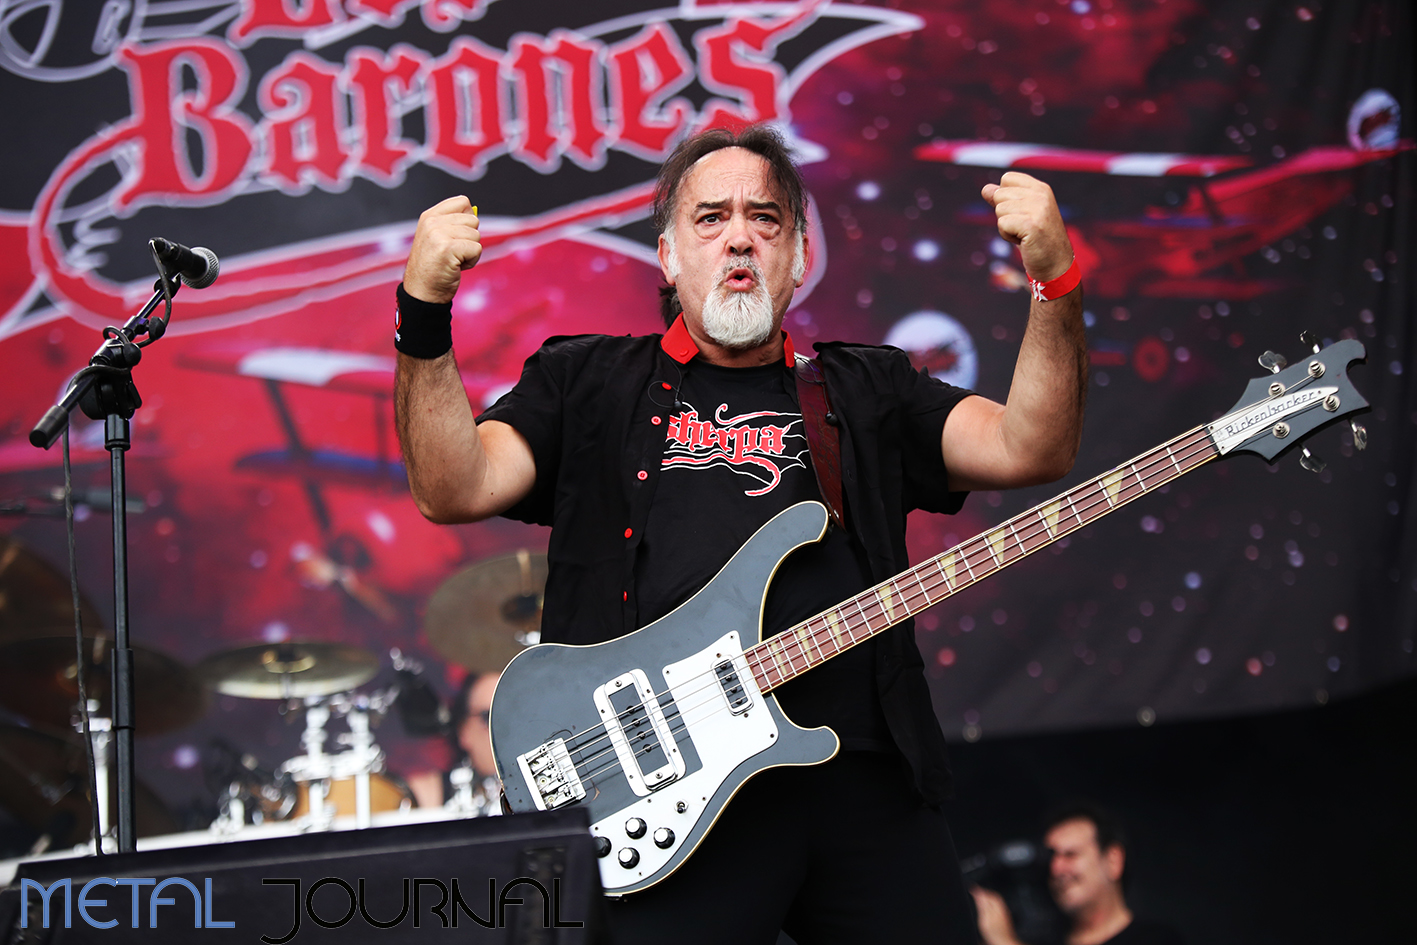 los barones - leyendas del rock 2019 metal journal pic 4